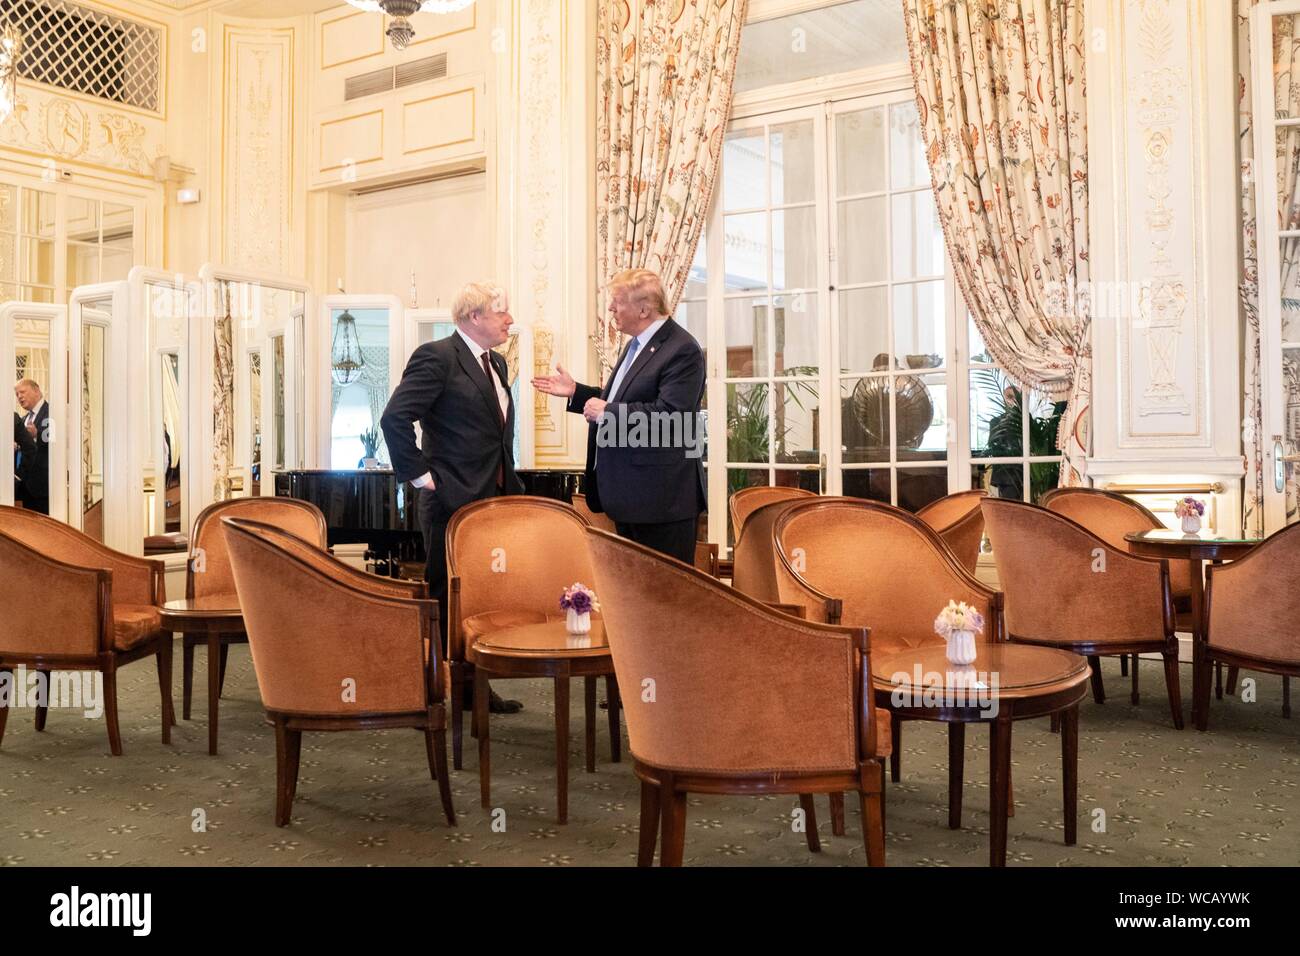 Us-Präsident Donald Trump, rechts, Chats mit dem britischen Premierminister Boris Johnson nach ihrem Treffen am Rande des G7-Gipfels im Hotel du Palais Biarritz August 25, 2019 in Biarritz, Frankreich. Stockfoto